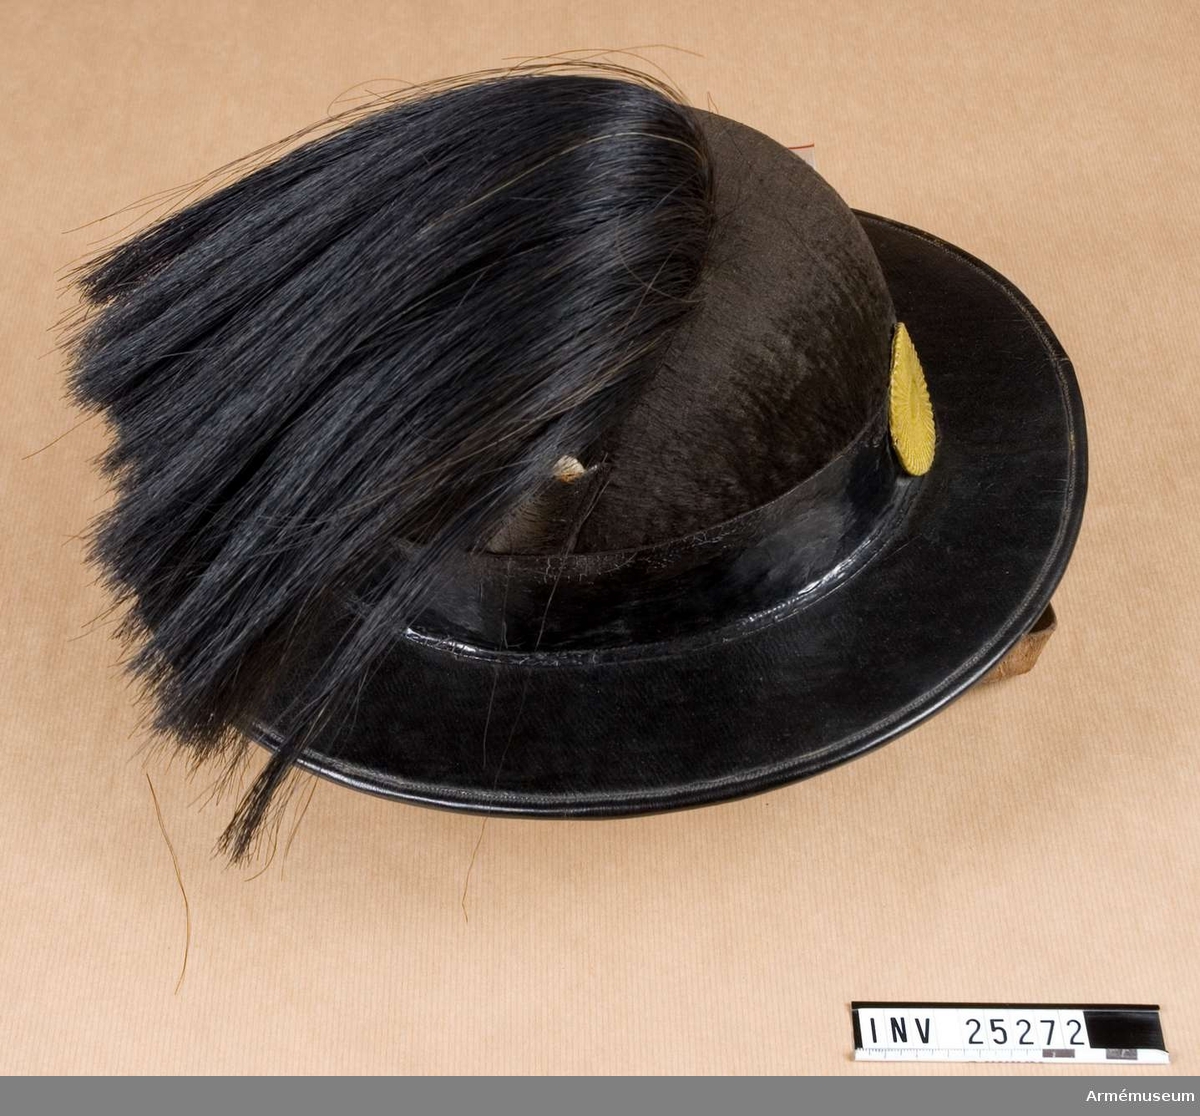 Grupp C I.
Hatt tillhörande paraduniform för manskap vid Värmlands fältjägarkår; 1859-1902.
Uniformen består av vapenjacka, byxor, hatt med plym, patronkök med livrem.